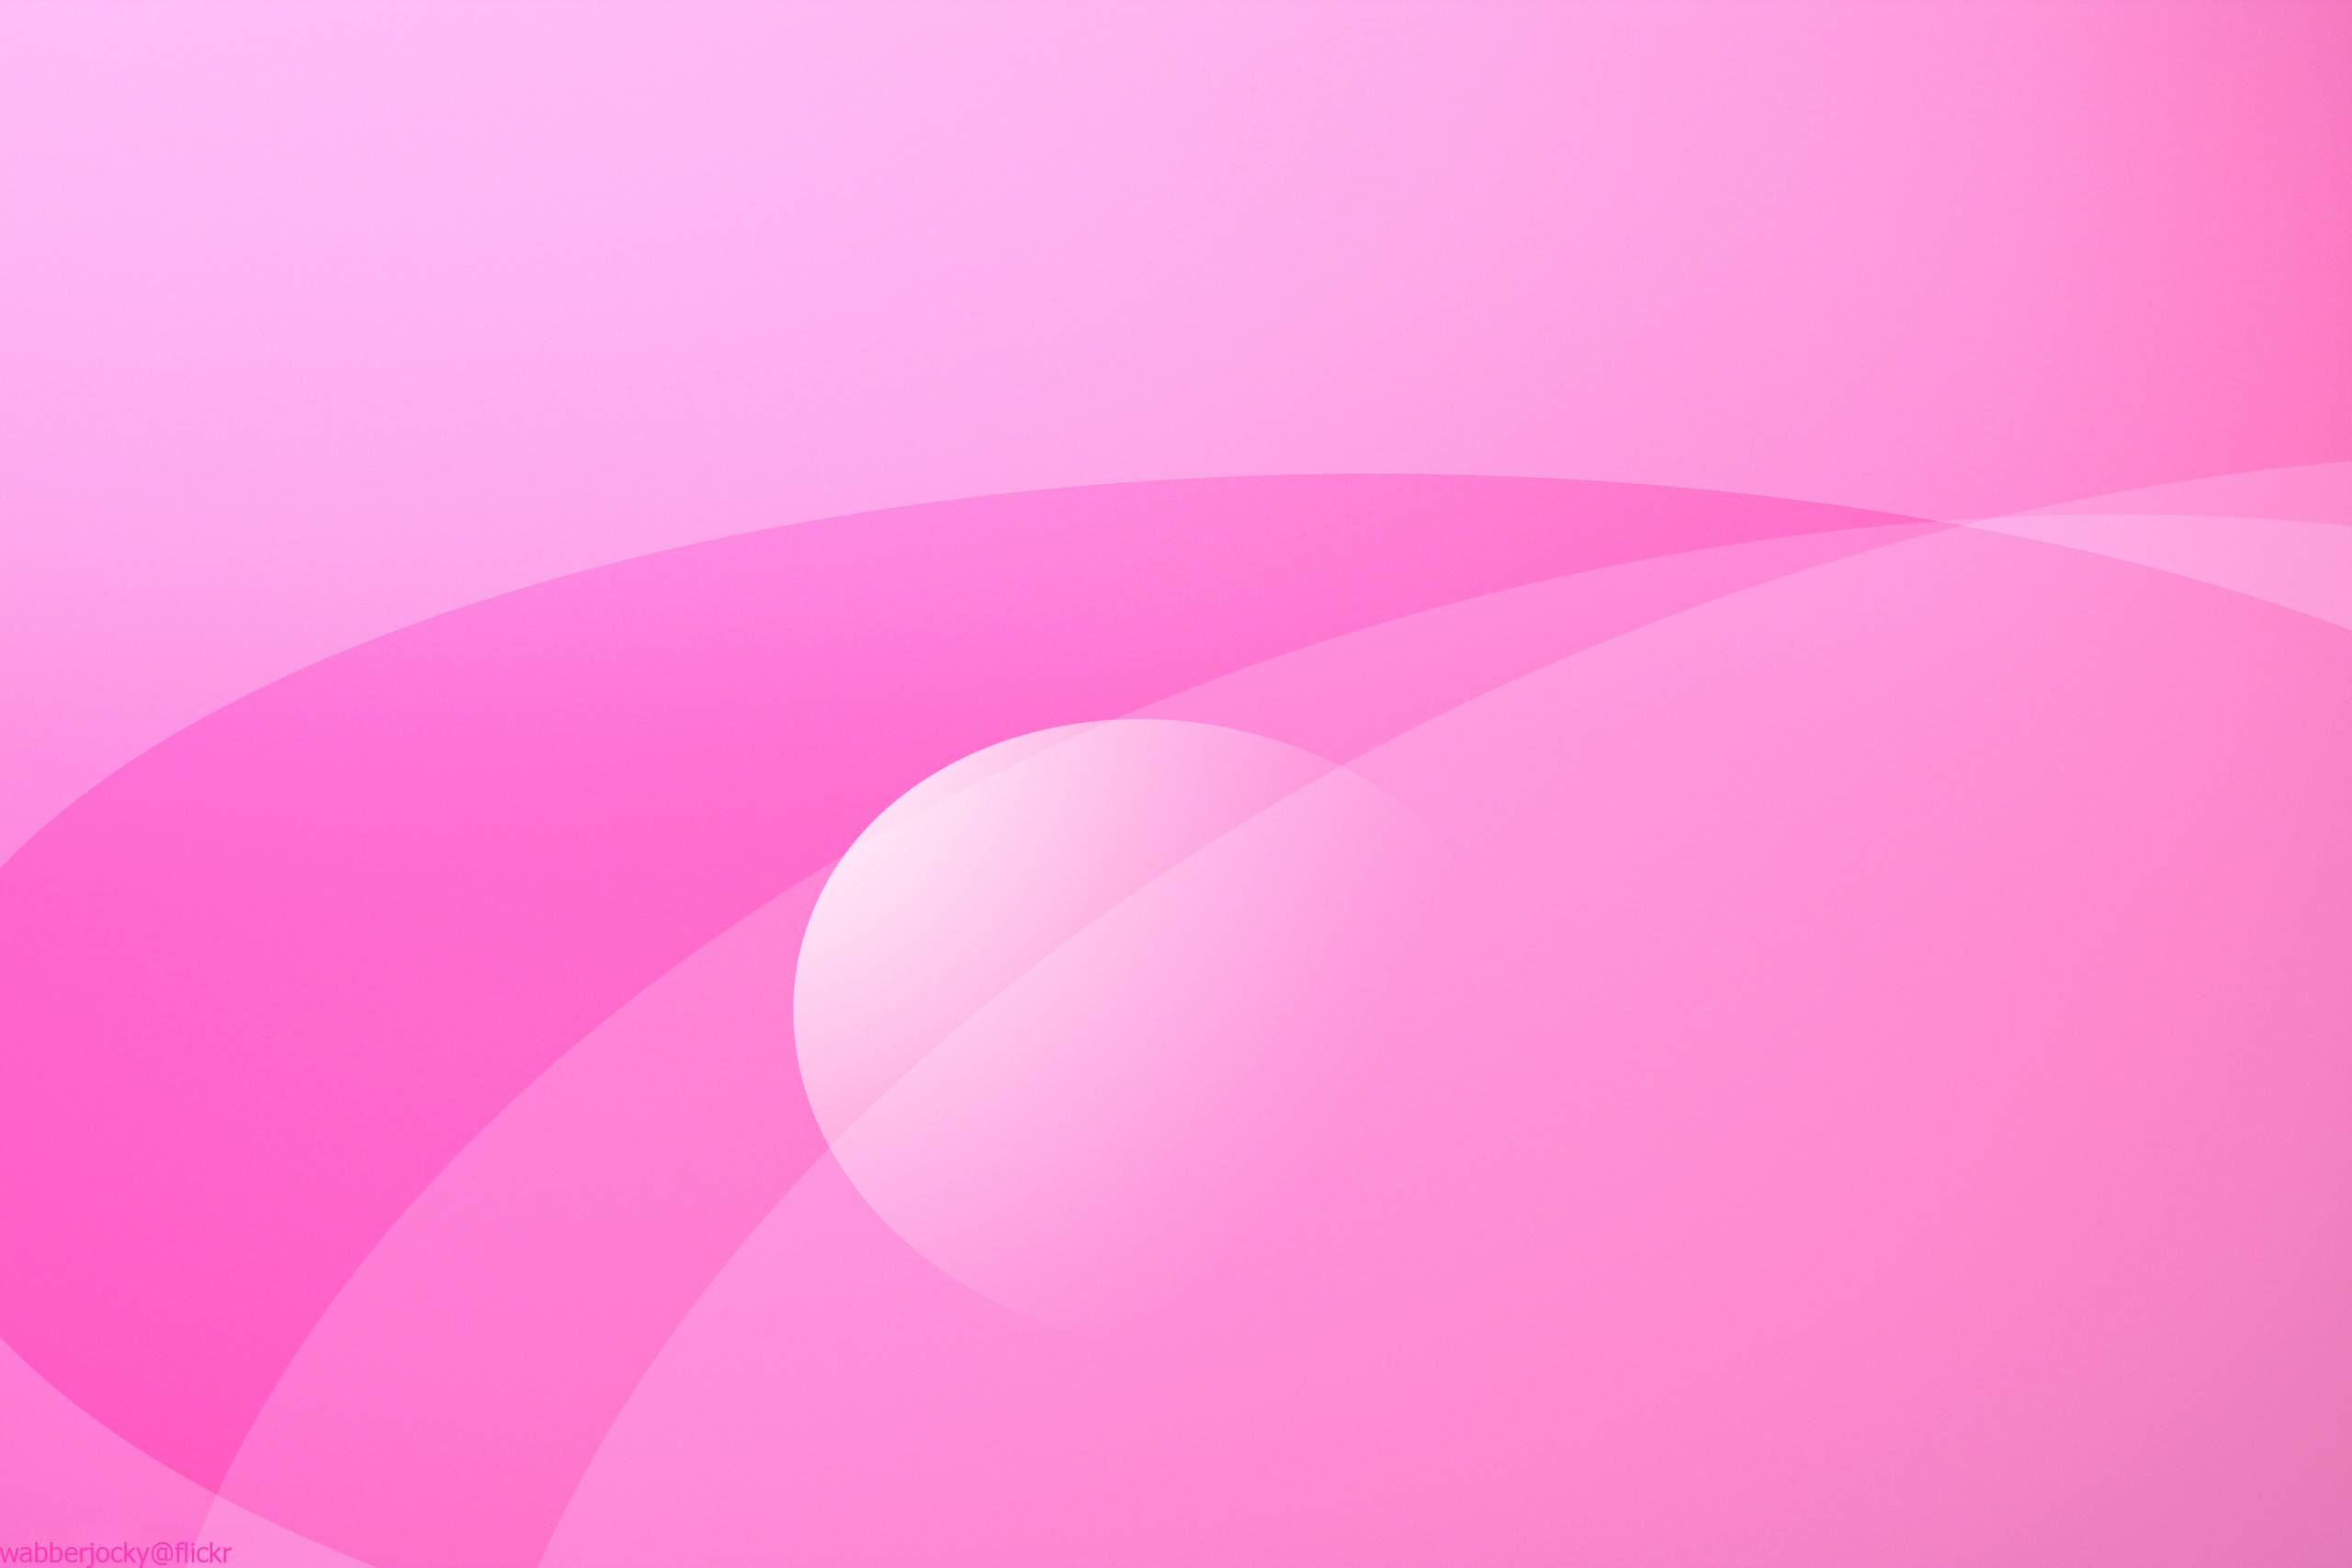 Hình ảnh nền màu hồng đẹp: Một tông màu hồng pastel dịu dàng sẽ khiến cho bất kỳ ai cũng cảm thấy thư thái, và hình ảnh nền màu hồng đẹp chắc chắn sẽ không làm bạn thất vọng. Hãy chiêm ngưỡng bức tranh tĩnh lặng này và để bầu không khí thoải mái lan tỏa đến bạn.